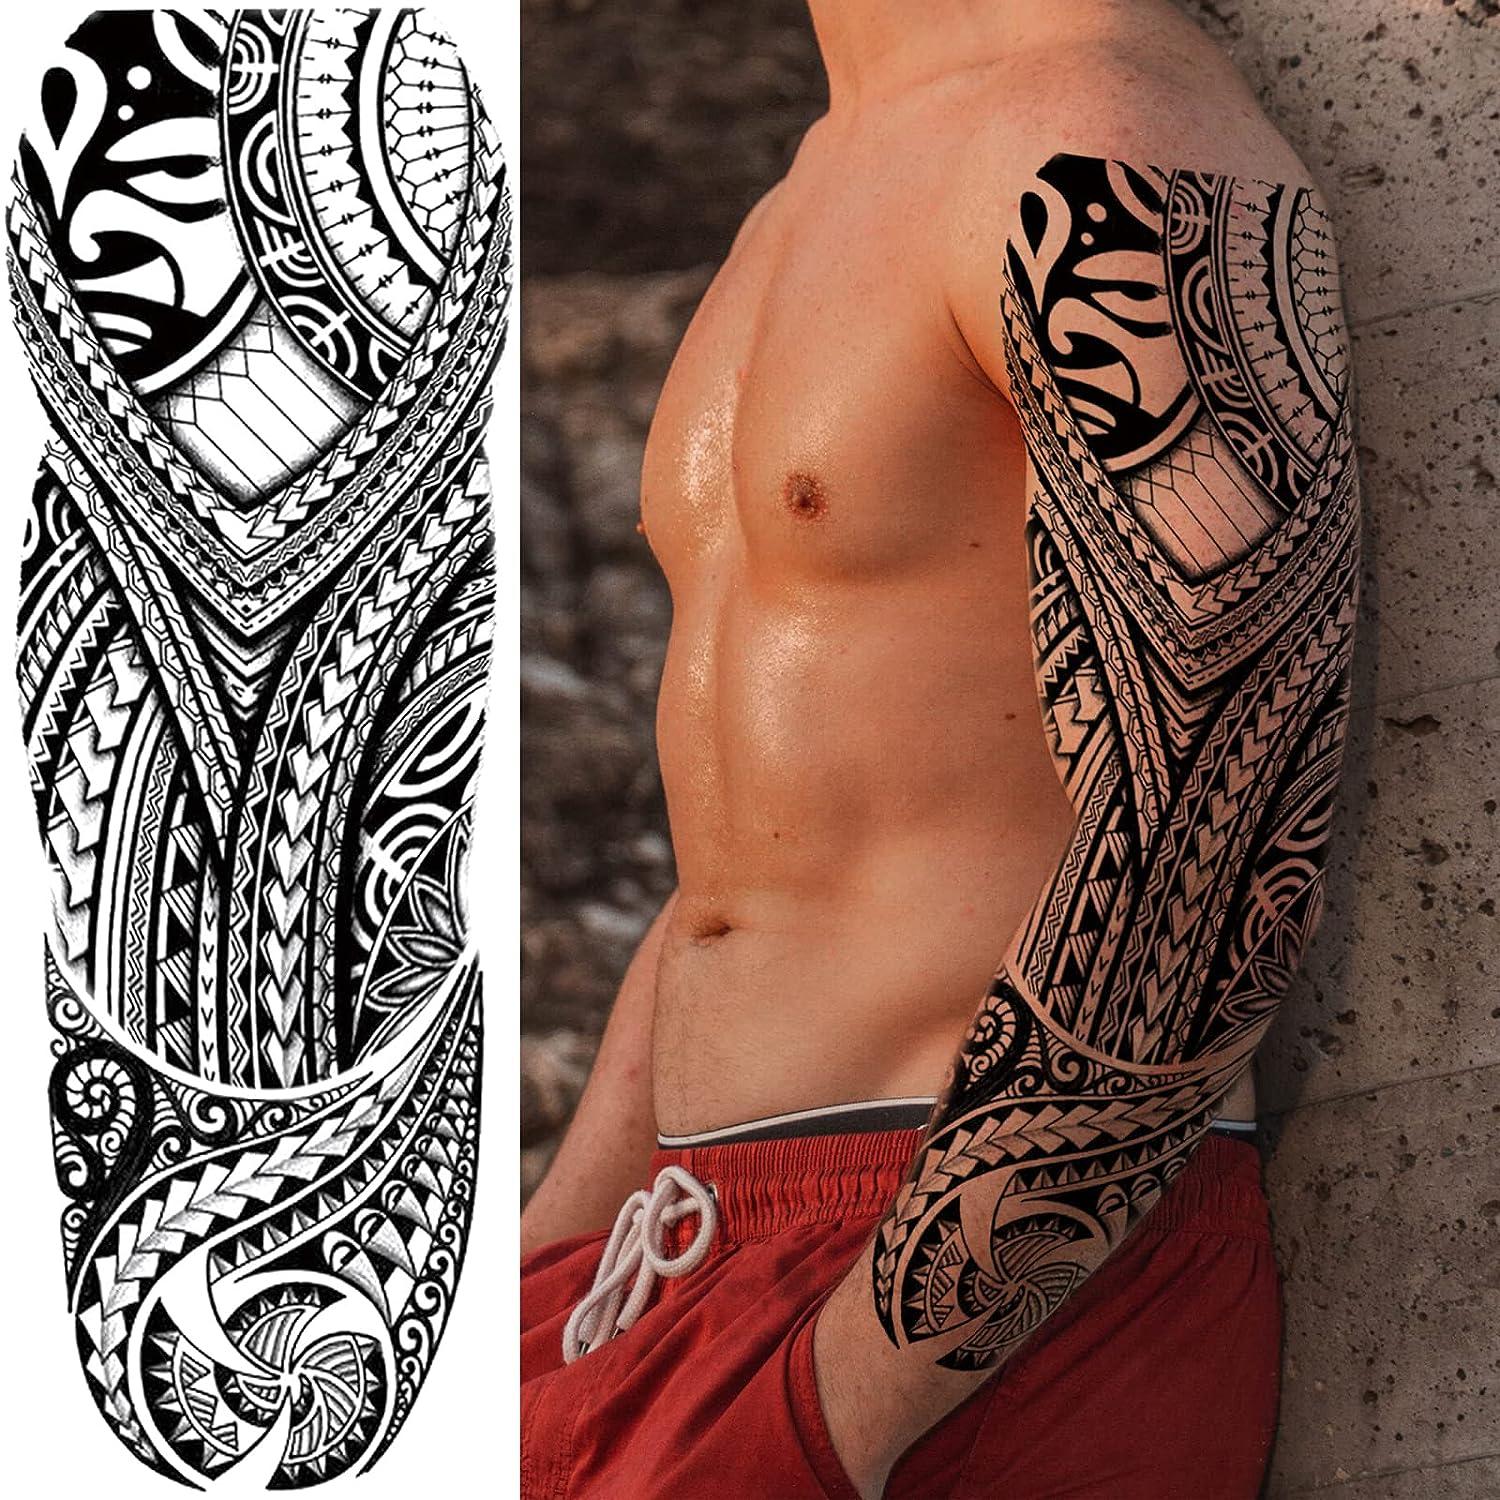 Tribal Tattoo Design - Best Tattoo Ideas Gallery